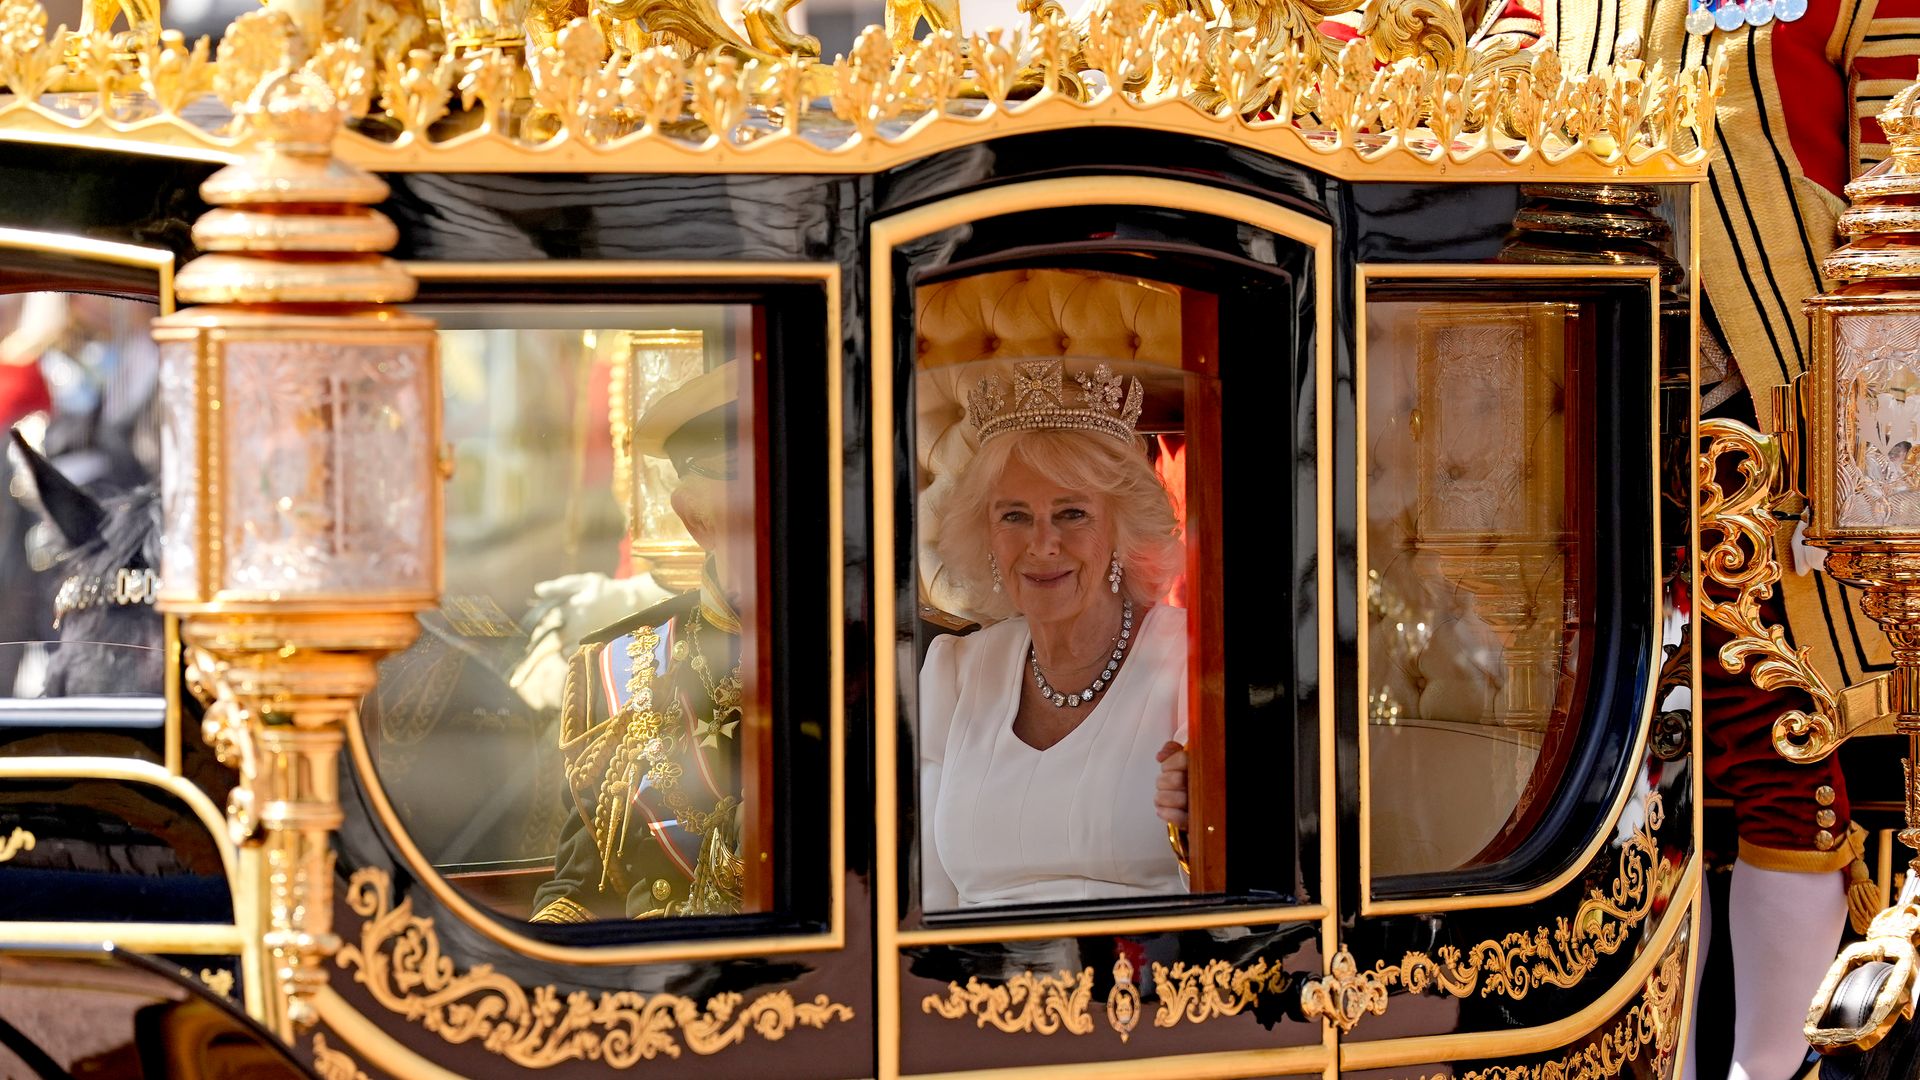 La reina Camilla, la mujer que más ha transformado a la monarquía británica, se 'corona' el día de su cumpleaños